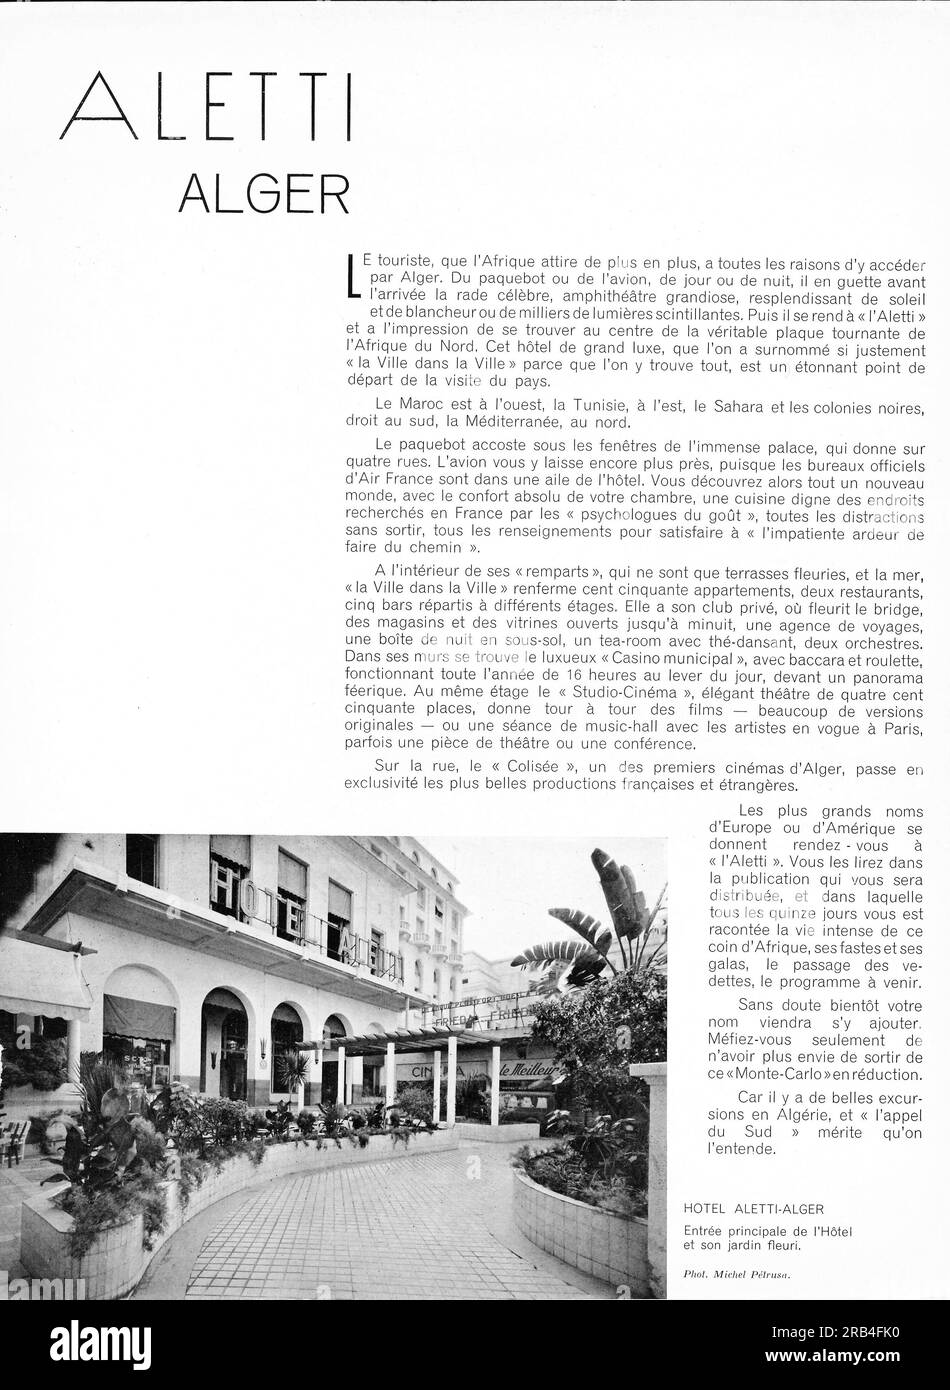 Hotel Aletti Algeria advertisiment in a French magazine 1950 Stock Photo